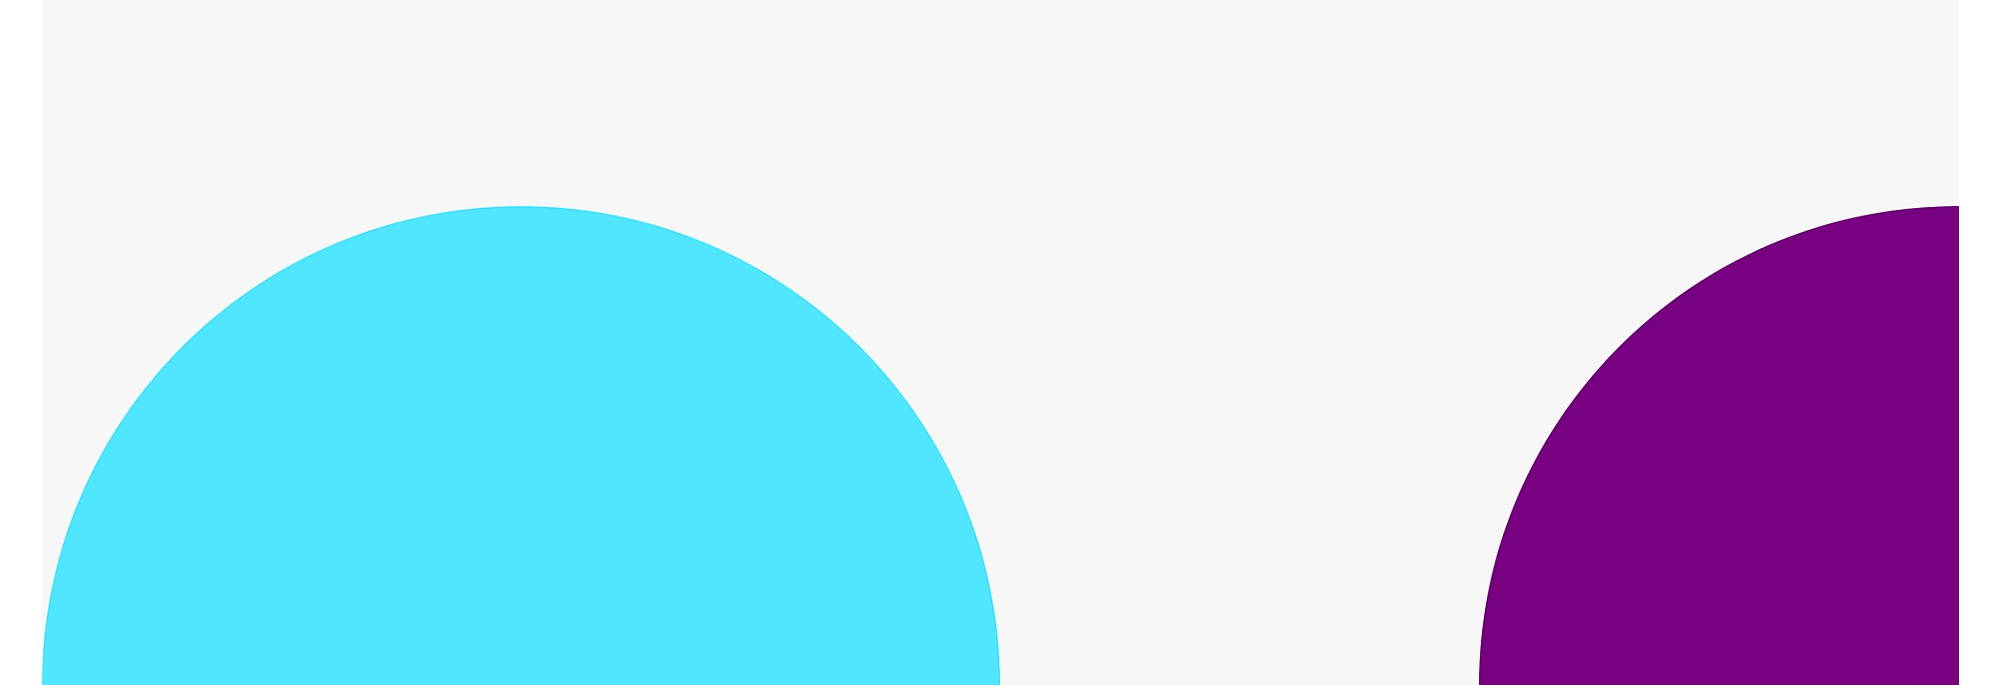 兩個大且部分重疊的圓形，左側是藍色圓圈，右側是紫色圓圈 